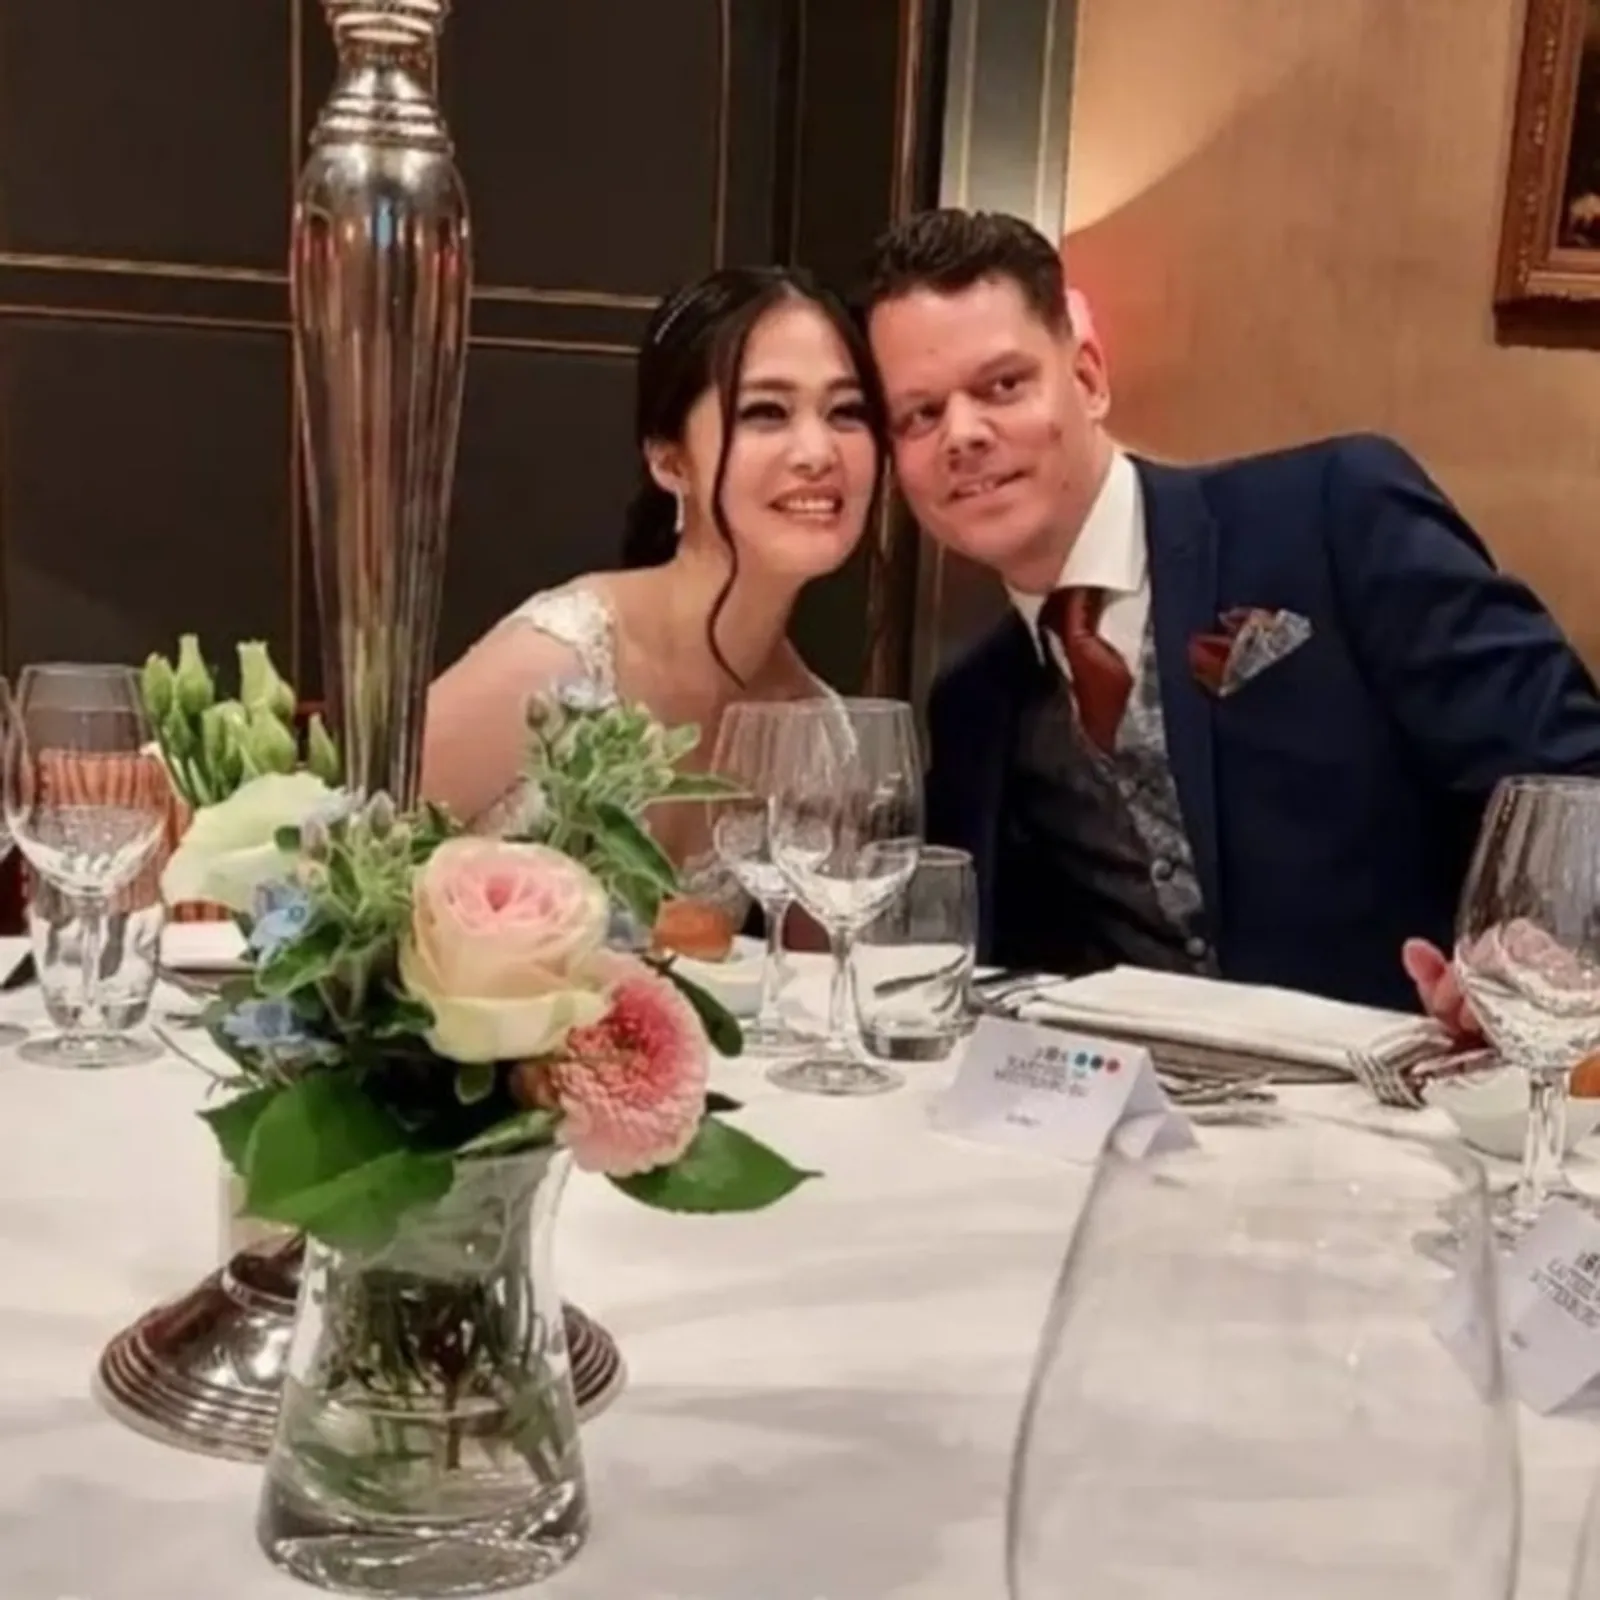 Lepas Status Janda, 10 Foto Pernikahan Gracia Indri & Suami di Belanda